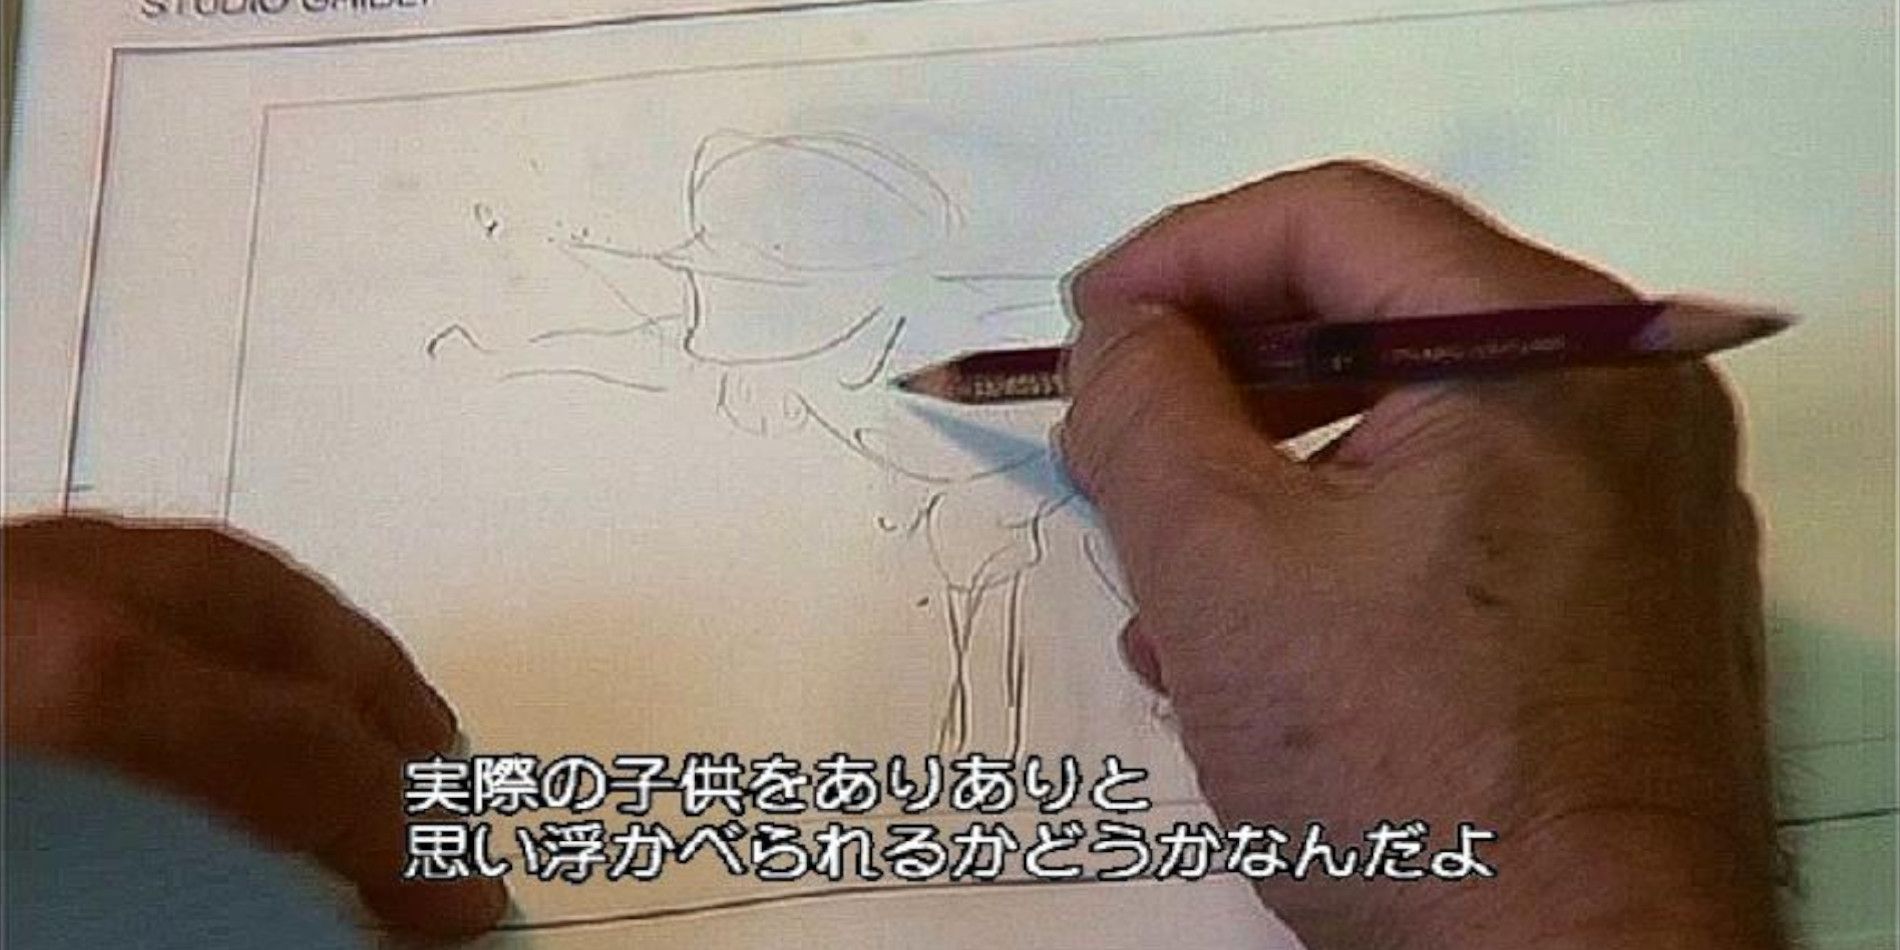 Критика аниме Хаяо Миядзаки значит больше, чем думают фанаты